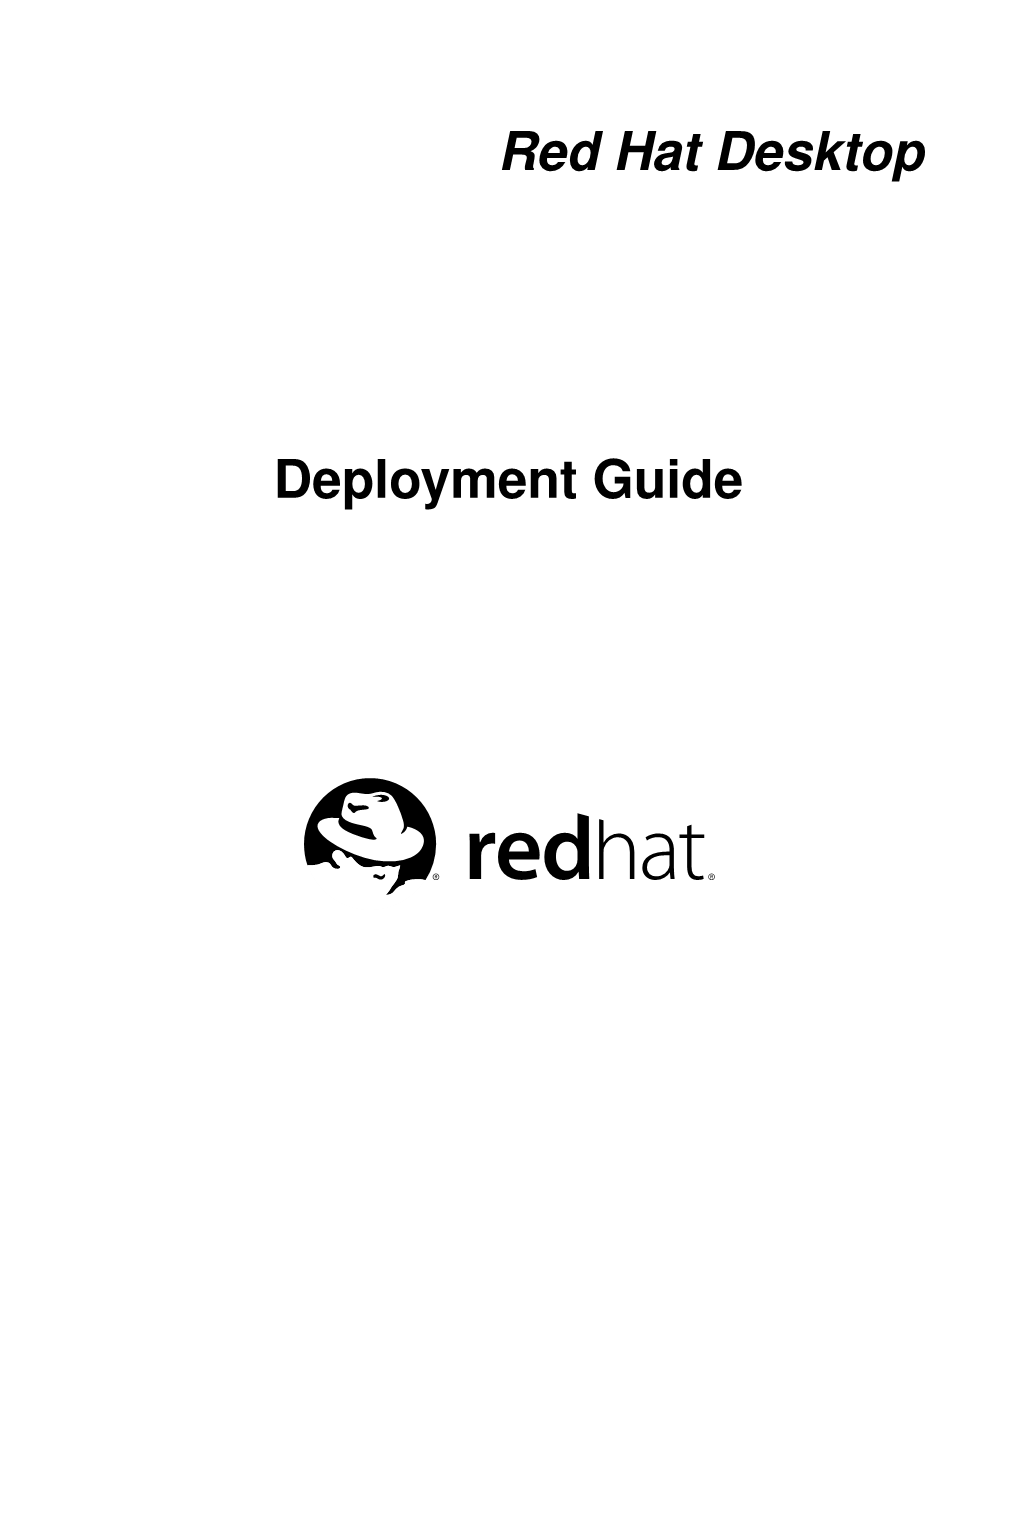 Red Hat Desktop Deployment Guide